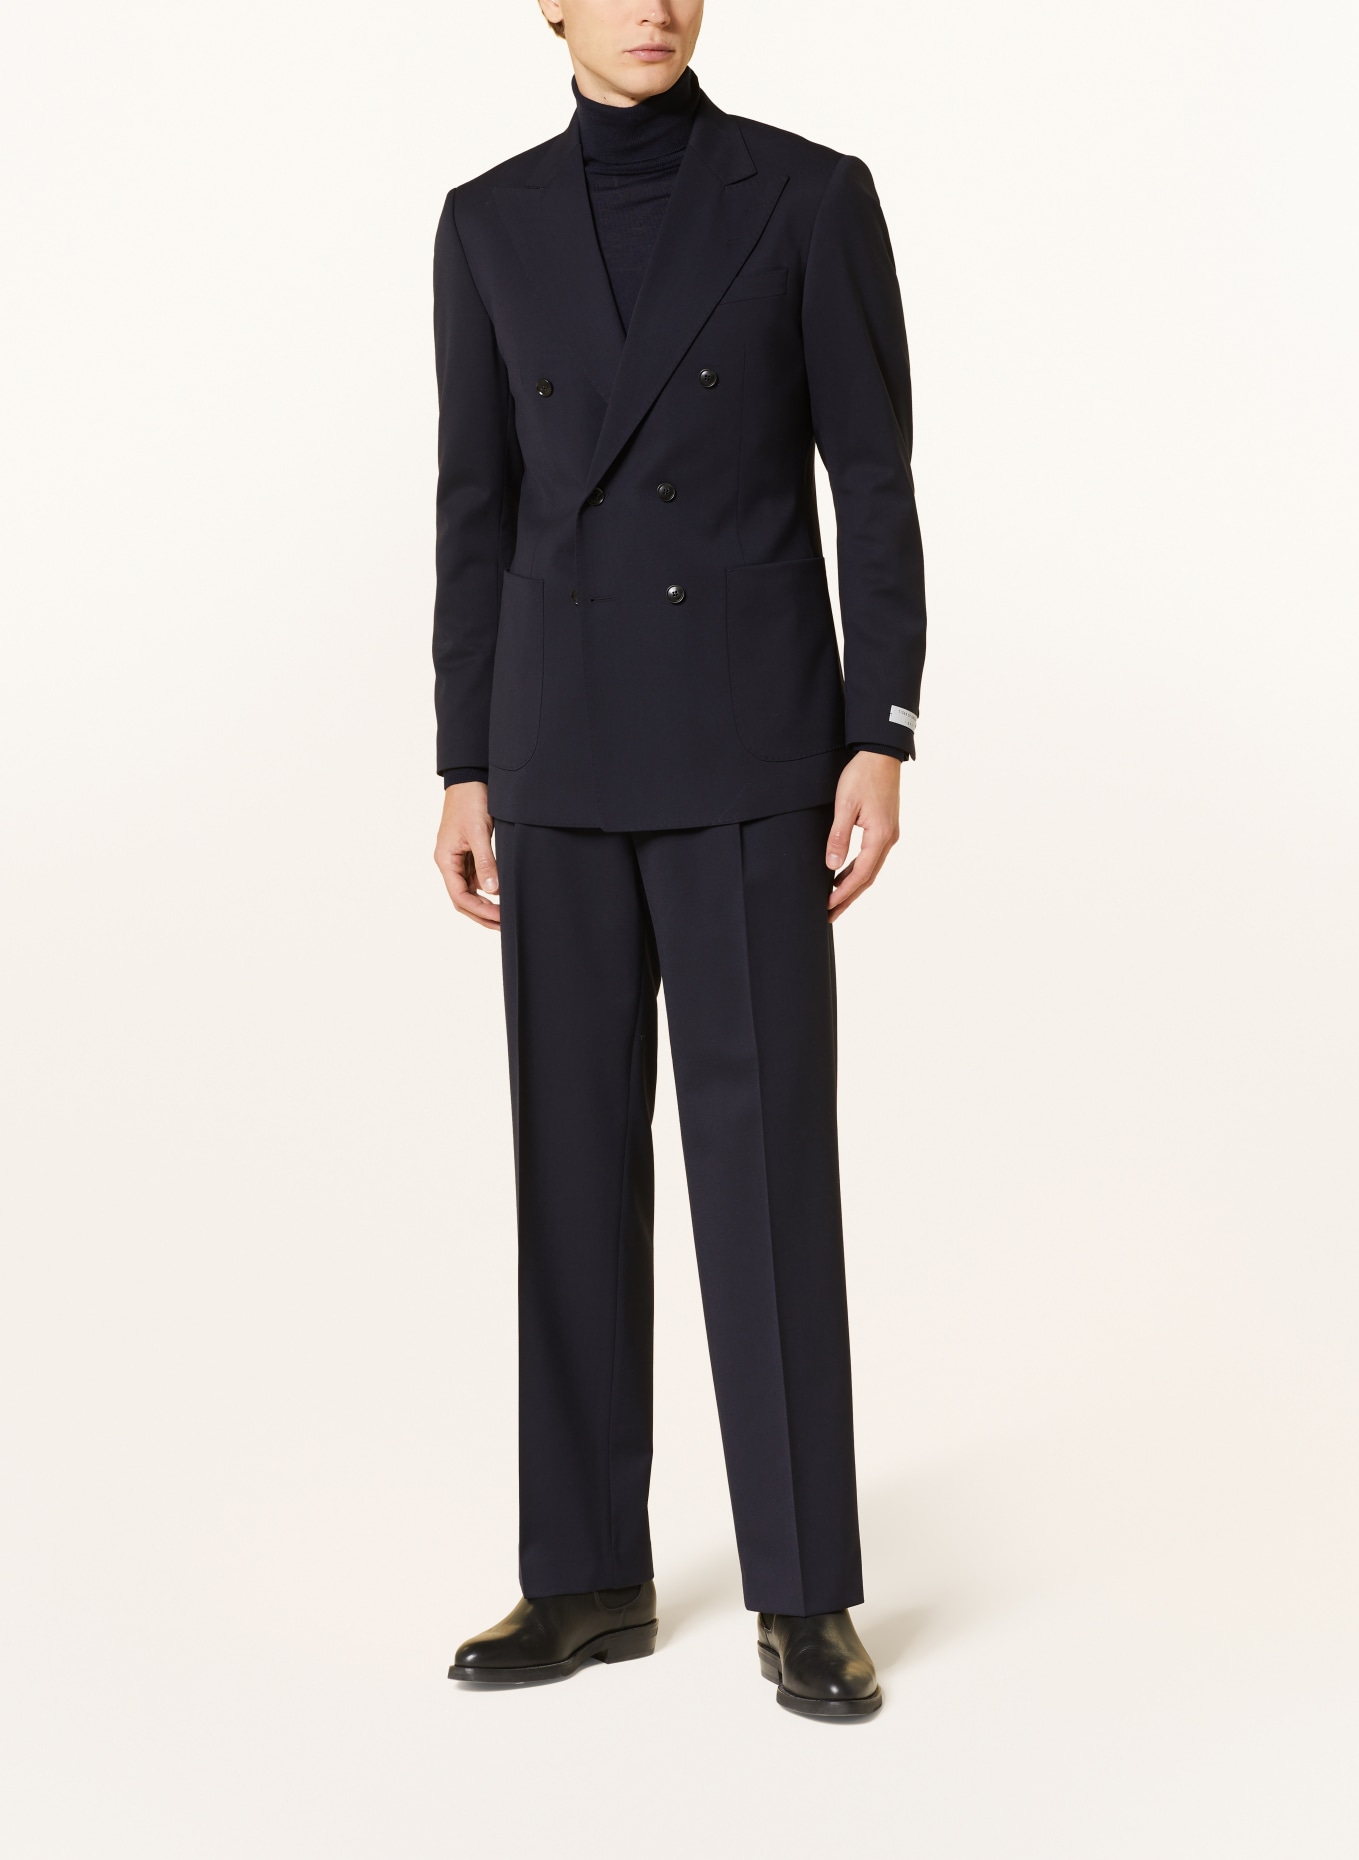 TIGER OF SWEDEN Suit jacket JARVIS regular fit, Color: 09C Dark Ink (Image 2)